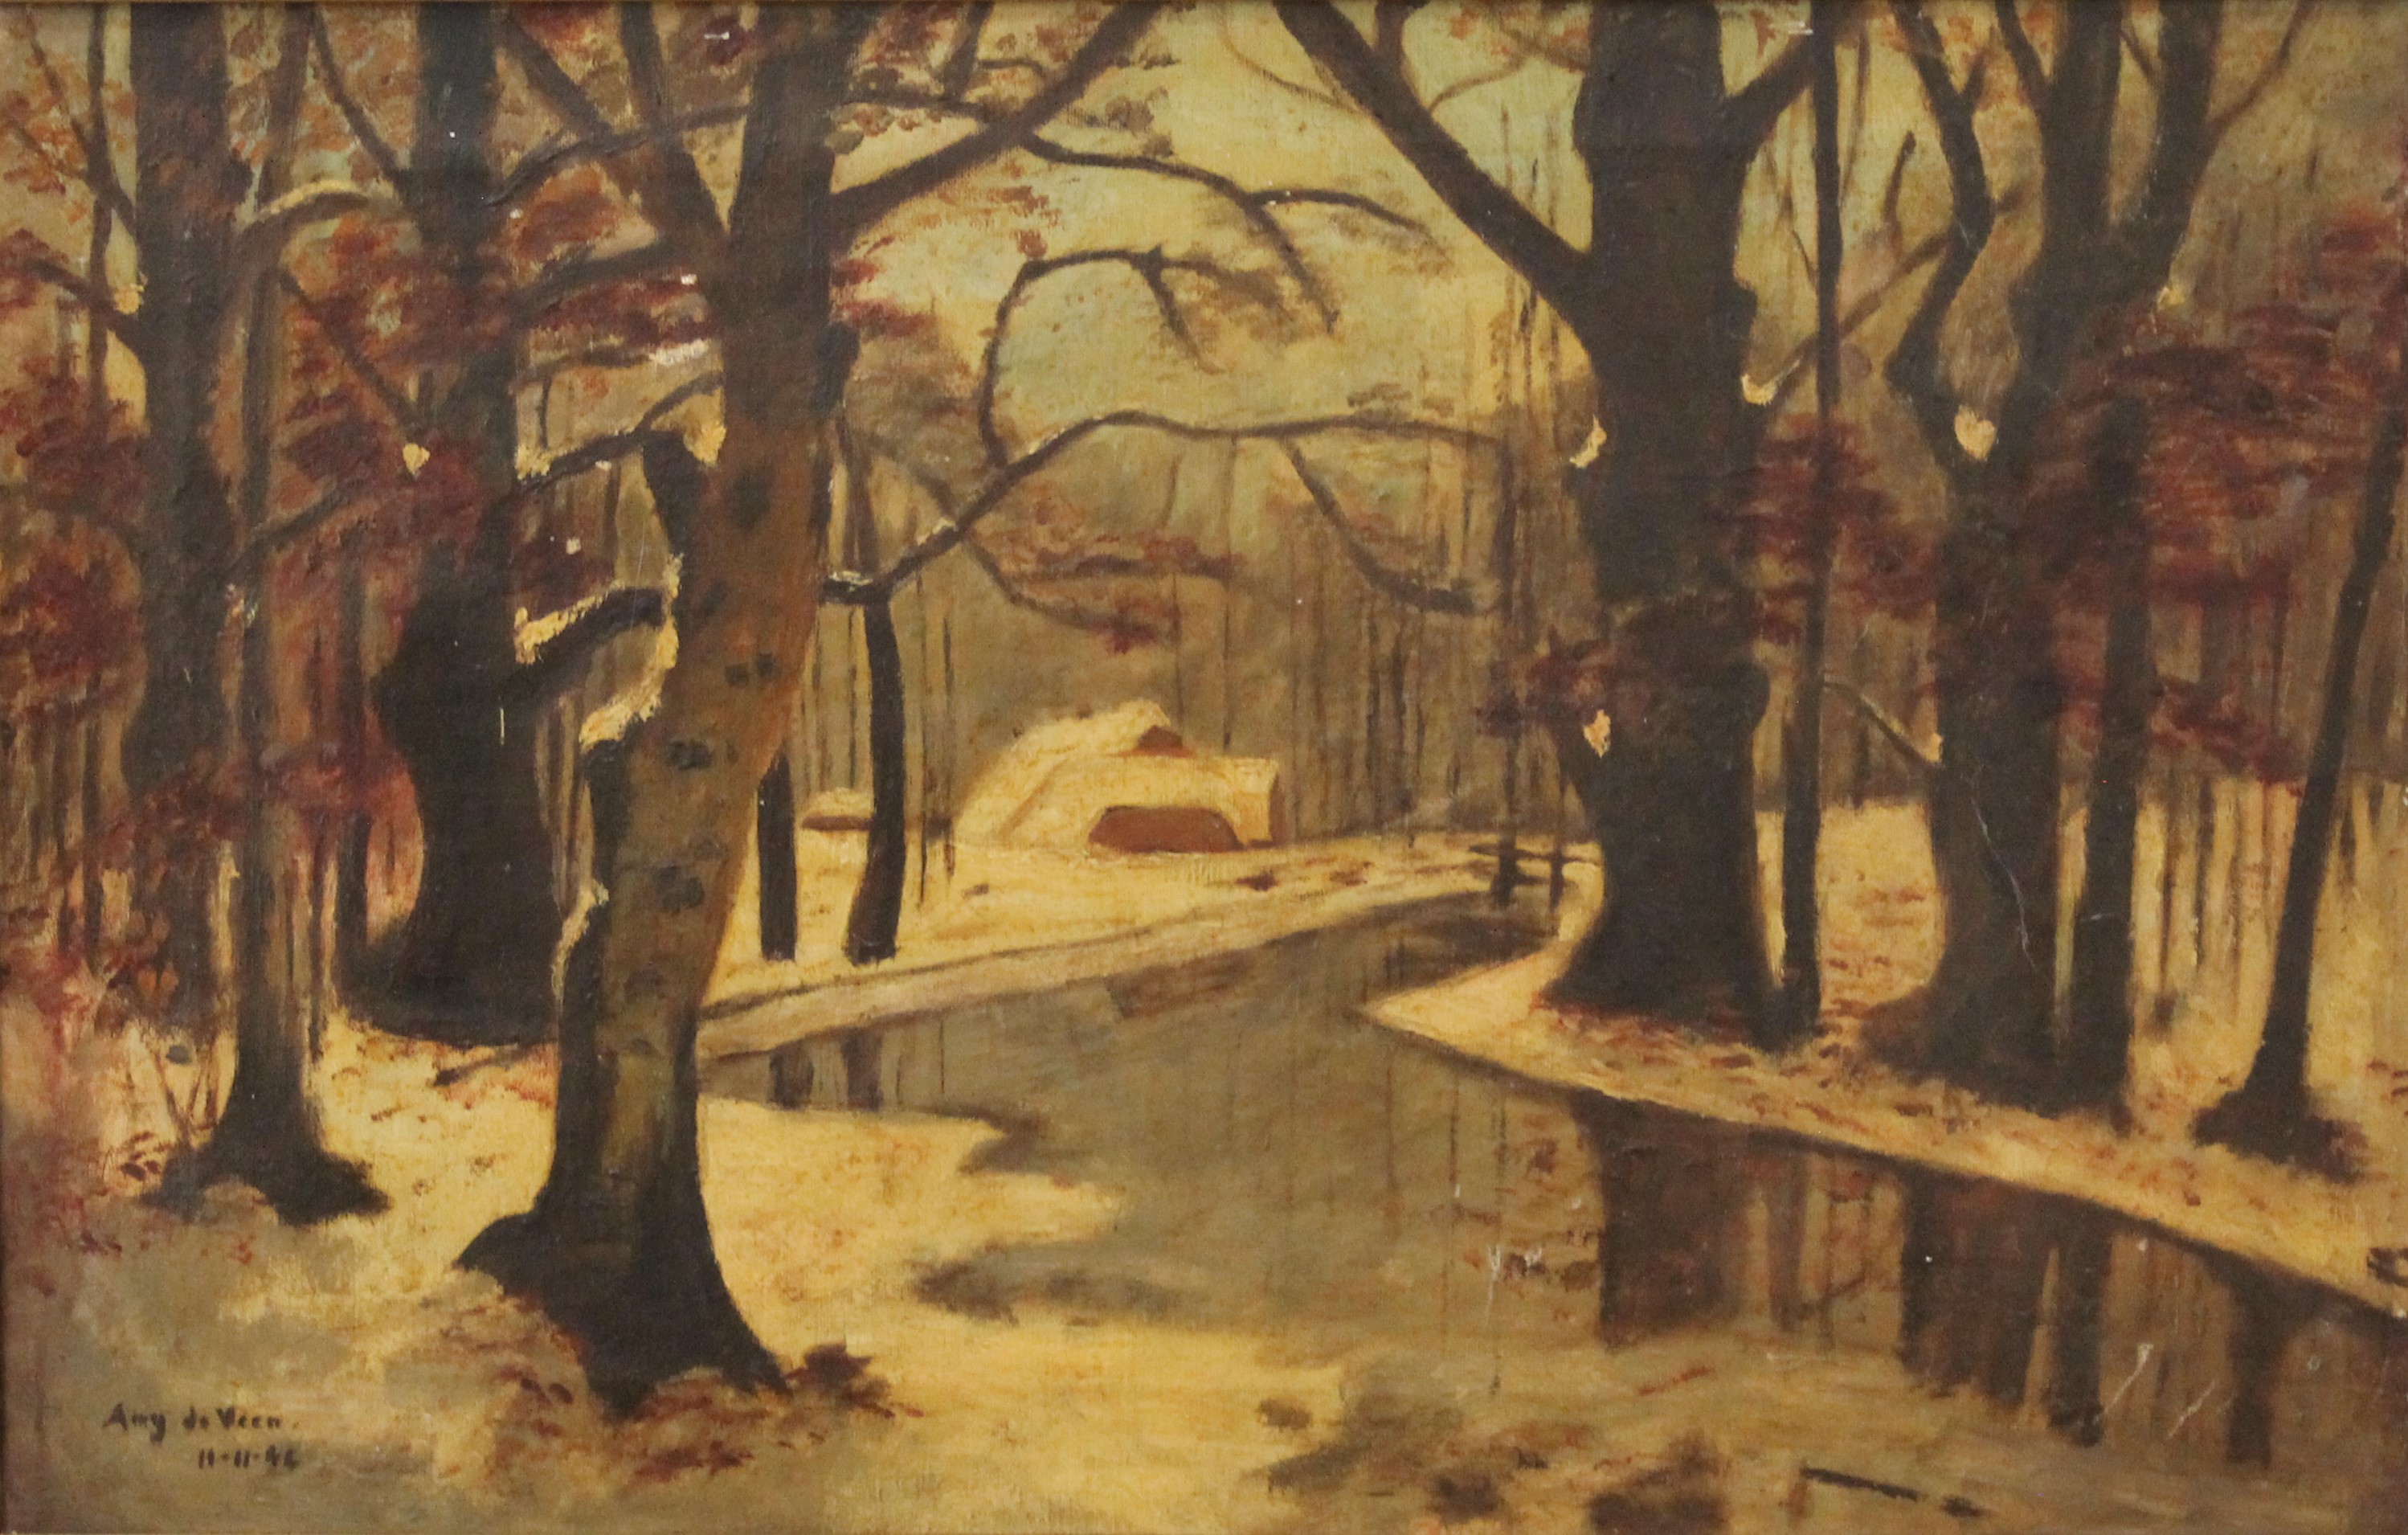 AUG DE VEEN, Autumn Woodland Scene, oil on canvas, framed. 61 x 38 cm.